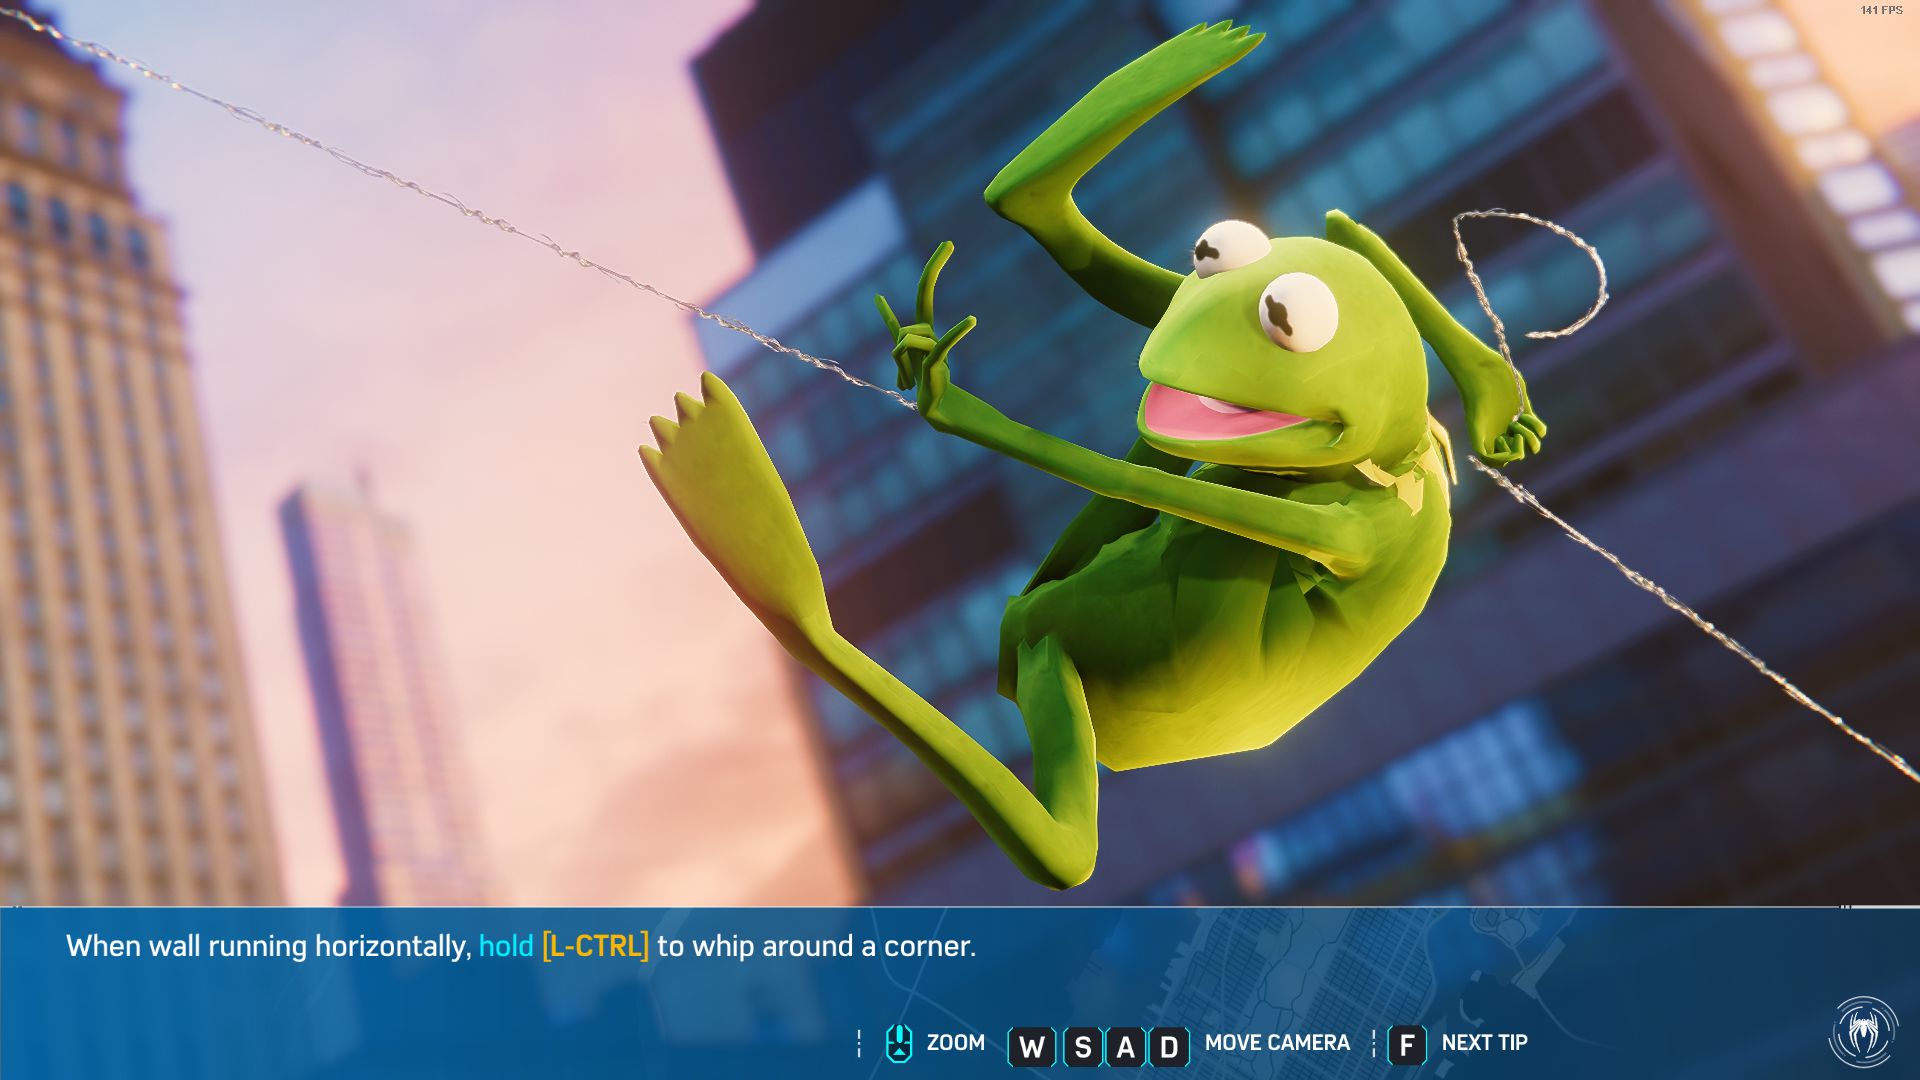 Скриншот мода с лягушонком Кермитом. Источник: Nexus Mods